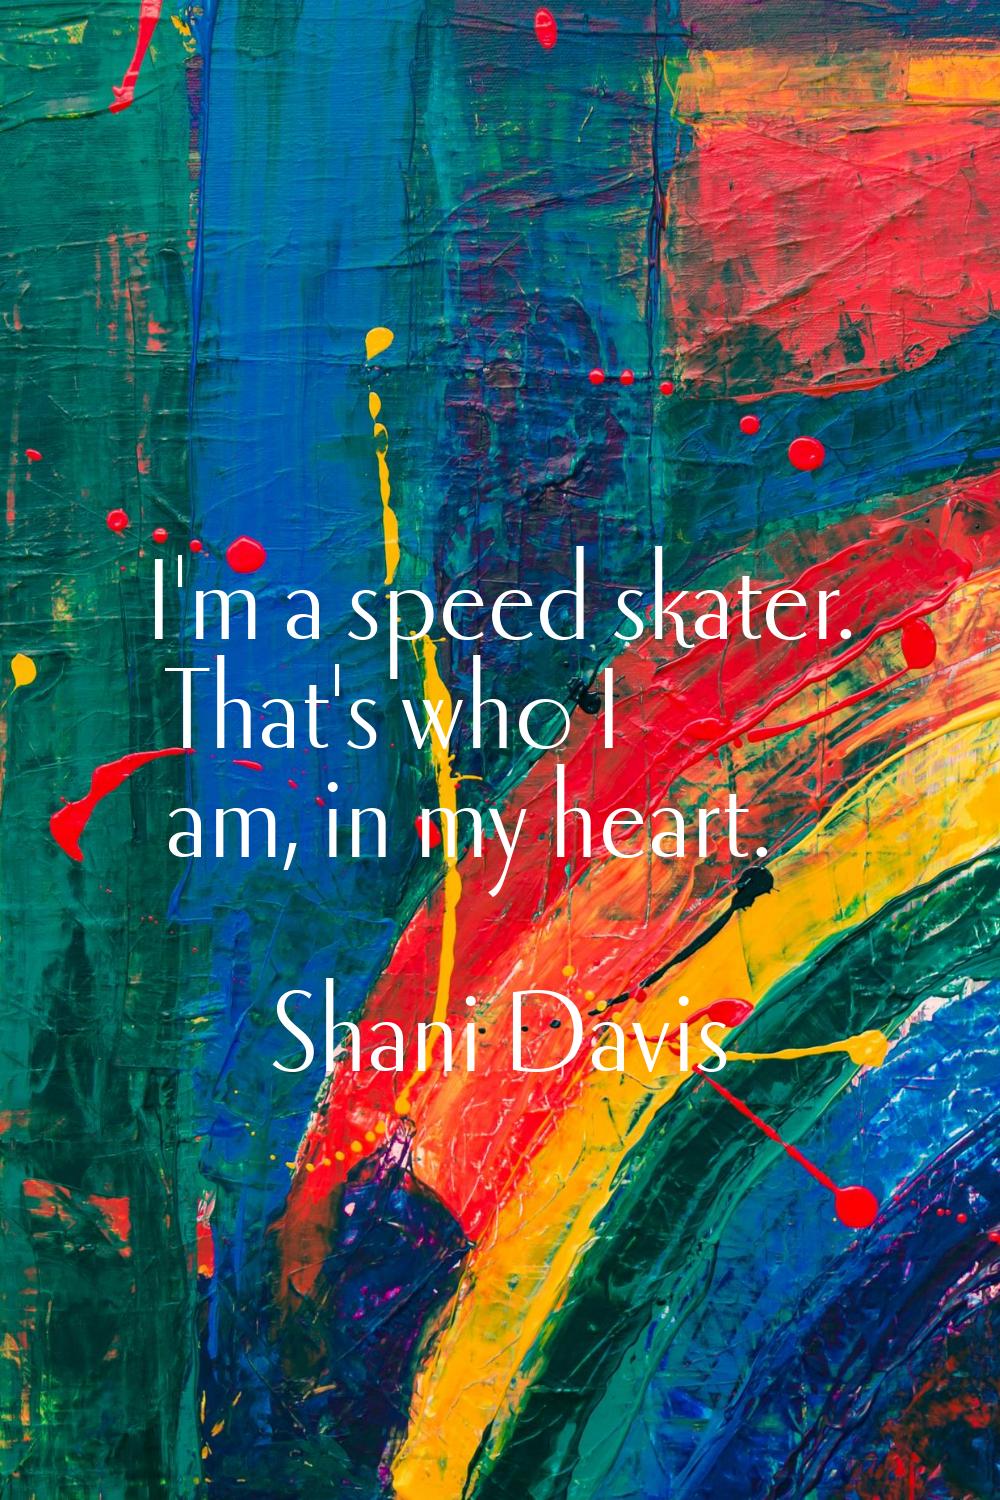 I'm a speed skater. That's who I am, in my heart.